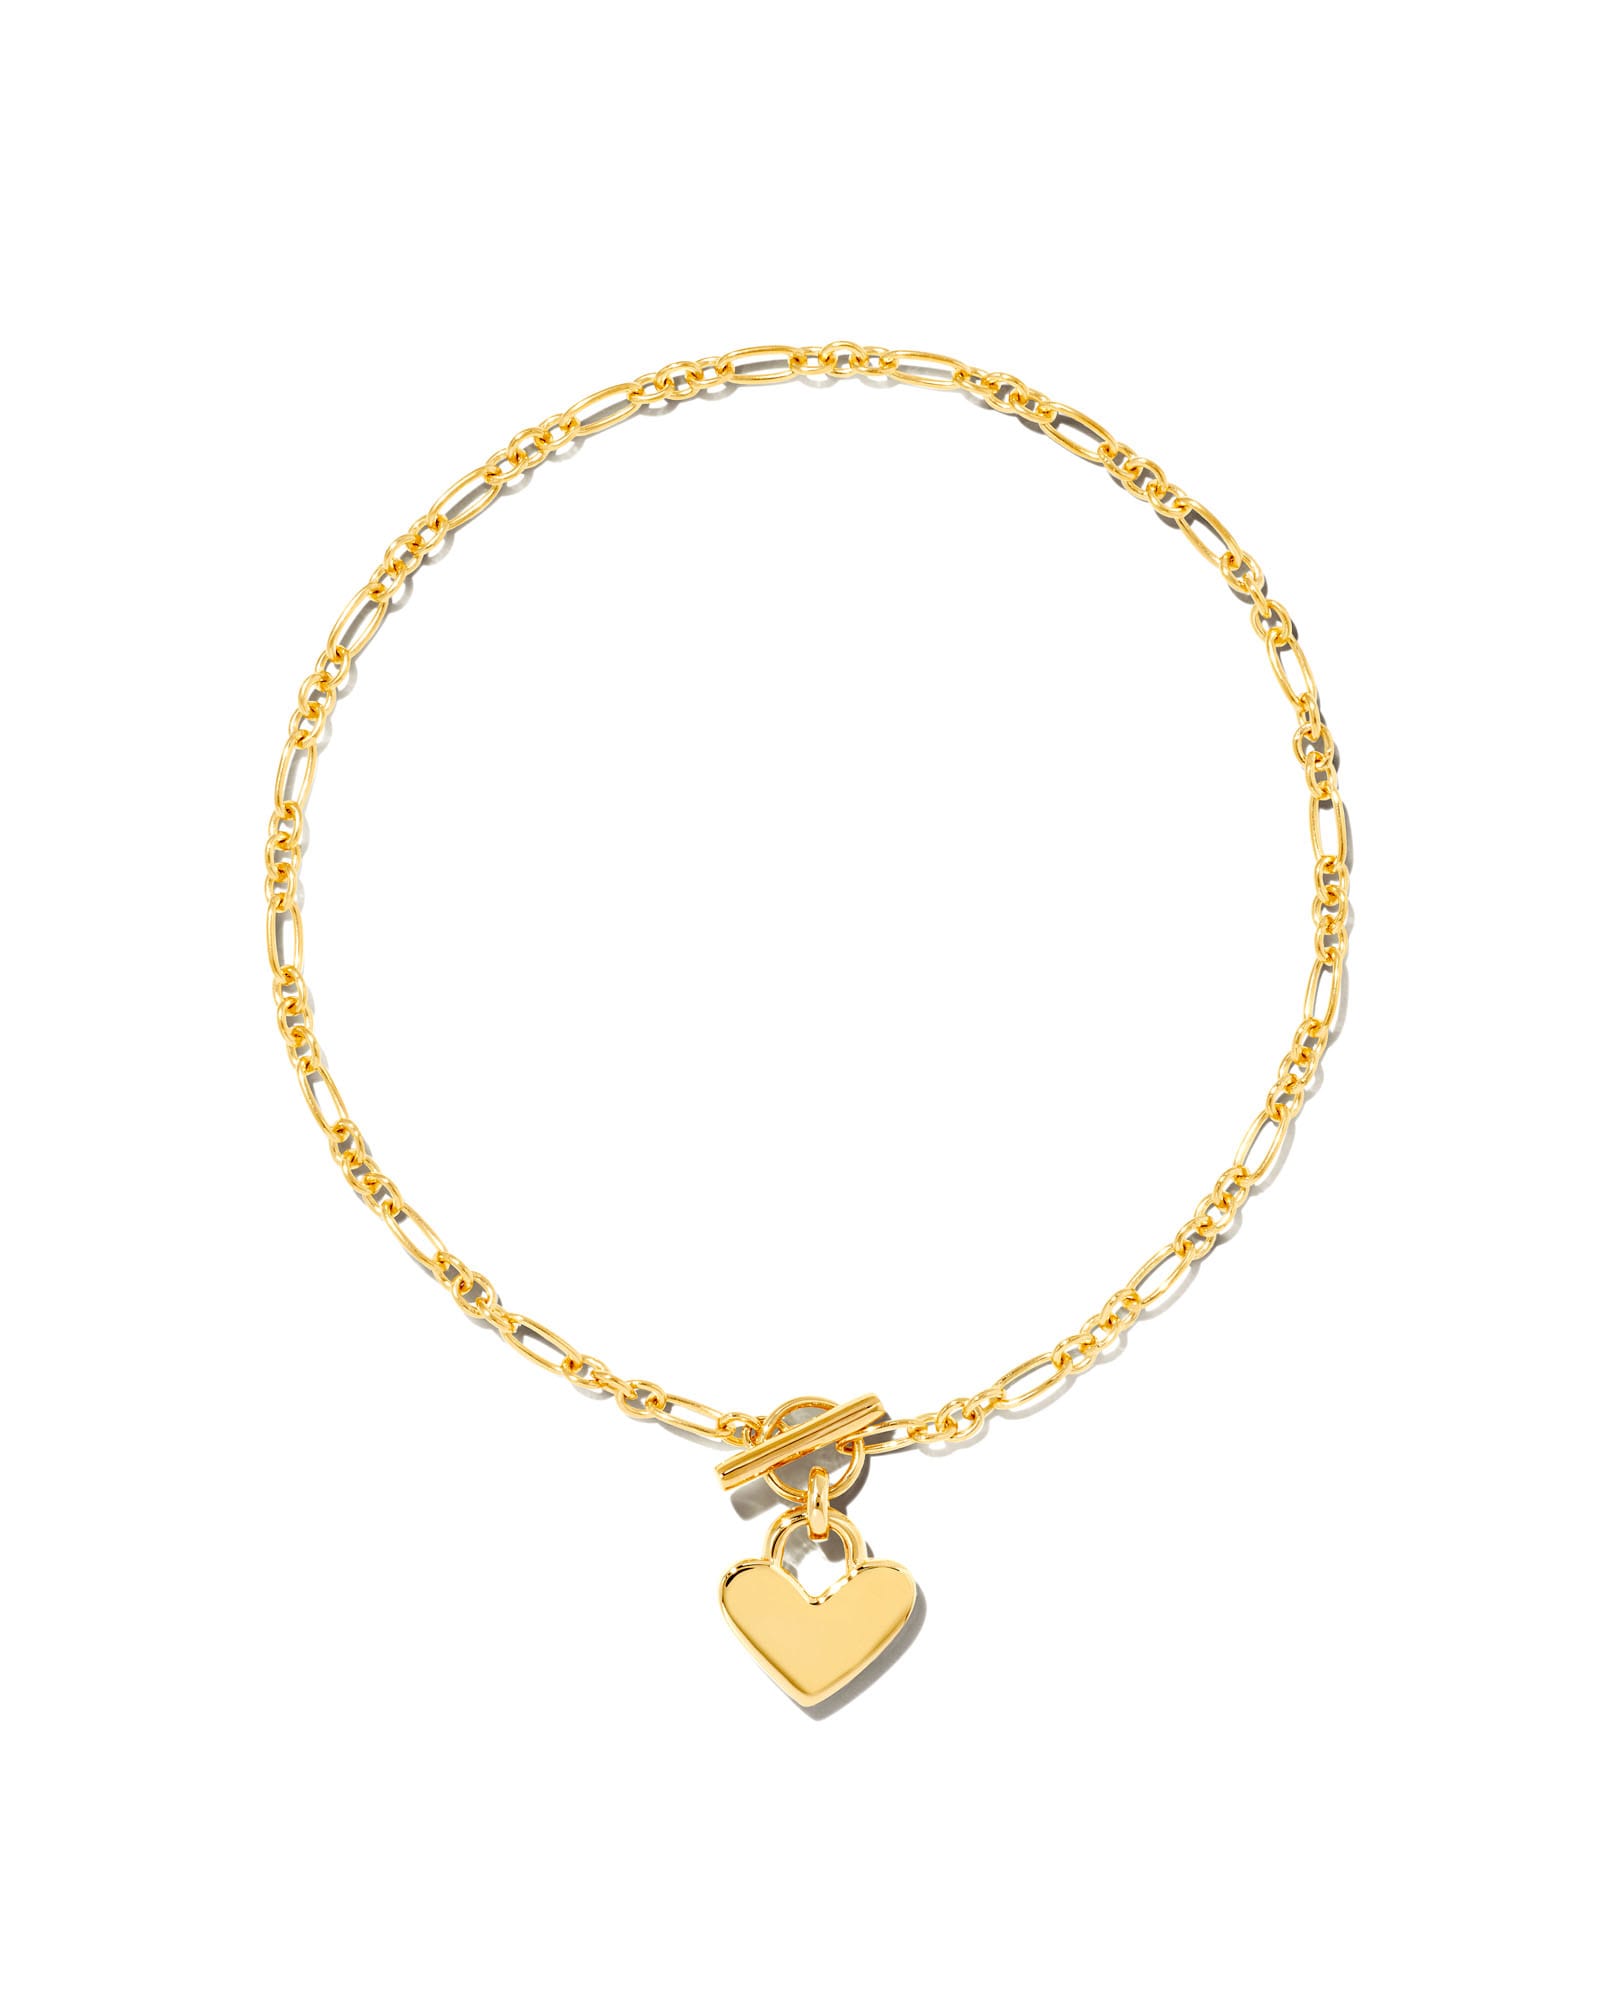 Kendra Scott Heart Padlock Chain Bracelet in 18k Gold Vermeil | Sterling Silver